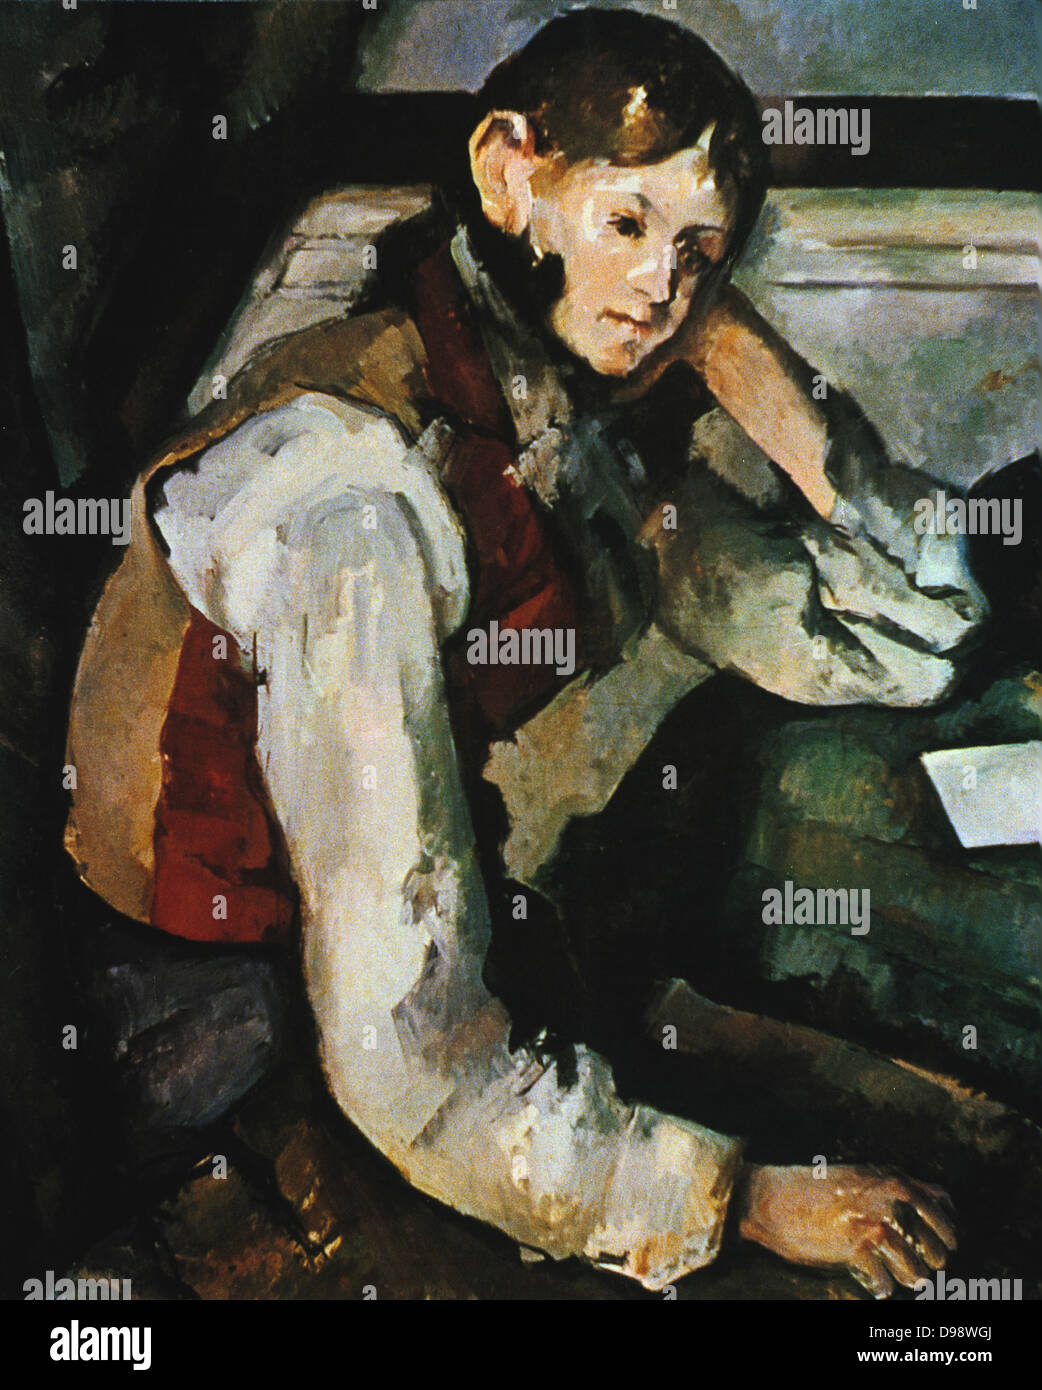 Junge in einer roten Weste ", 1894-1895. Öl auf Leinwand. Französische Post-Impressionisten Maler Paul Cézanne (1839-1906). Porträt, sitzend Stockfoto